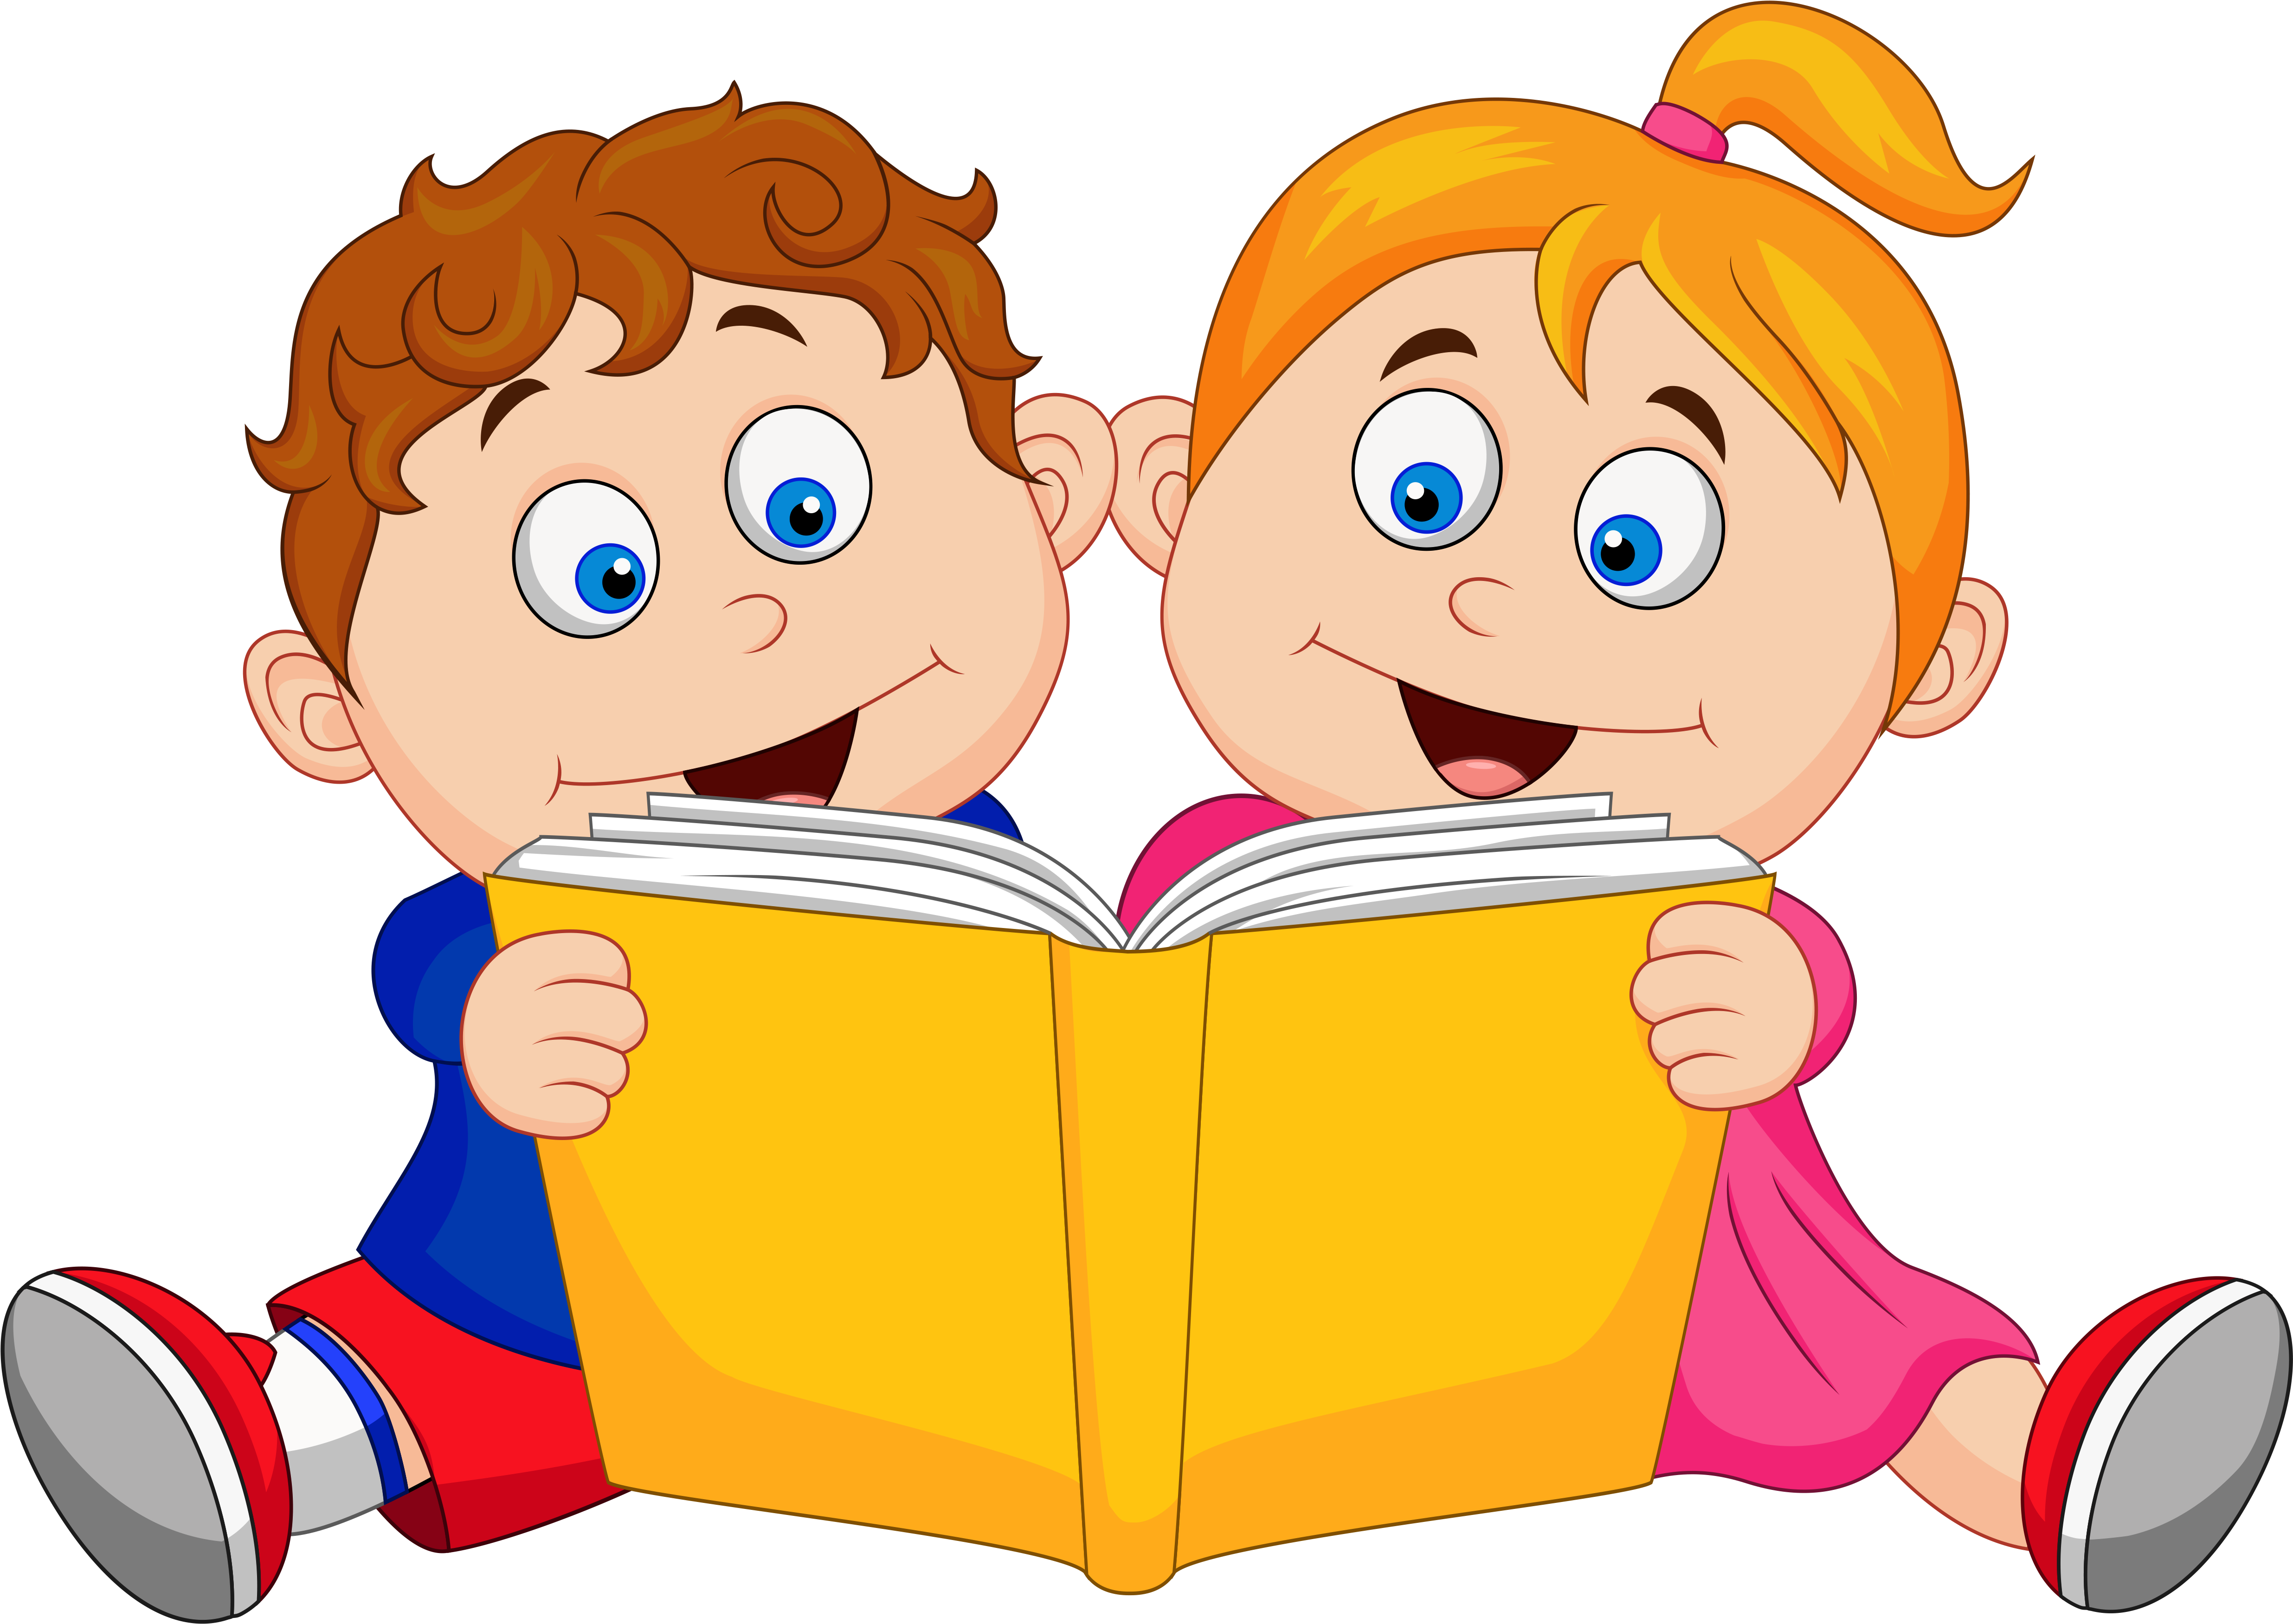 Картинка дети читают. Мультяшные дети с книгами. Мальчик с книжкой без фона. Мальчик и девочка читают книгу. Ребенок с книгой мультяшный.